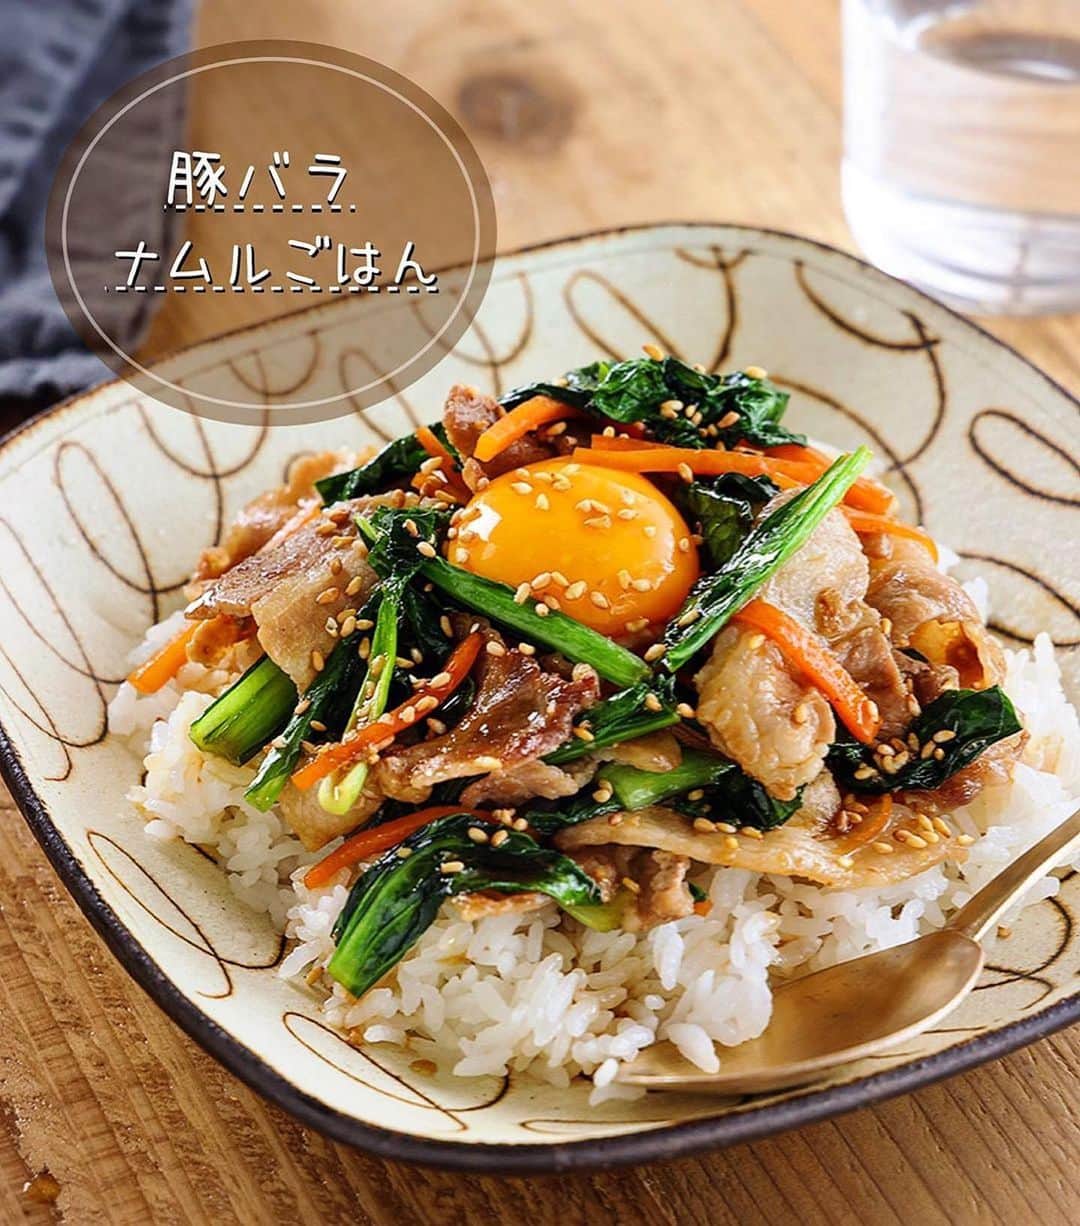 Mizuki【料理ブロガー・簡単レシピ】さんのインスタグラム写真 - (Mizuki【料理ブロガー・簡単レシピ】Instagram)「・一皿で大満足💕 ⁡ ［#レシピ ］ ーーーーーーーーーーーーーーー すぐでき！豚バラナムルごはん (そしてお礼です🙇‍♀️) ーーーーーーーーーーーーーーー ⁡ ⁡ ⁡ おはようございます☺️ ⁡ 今日ご紹介させていただくのは ささっとできる丼レシピ🍚 \ 豚バラナムルごはん /  (再掲載✨) ⁡ お手軽な豚バラ、小松菜、人参を ナムル風に炒めてごはんにON💕 この一皿でお肉も野菜も バランスよく食べられますよ〜😋 お好みで卵をからめて召し上がれ✨ ⁡ フライパンひとつでできるので お気軽にお試し下さいね🍳 ⁡ ⁡ ⁡ 💬💬💬 謎の暮らしアカウント作りました🏠 変なライブはこっちでやってます🤫 →(@mizuki_kurashi ) ⁡ ⁡ 【簡単・時短・節約レシピ更新中🔻】 @mizuki_31cafe ⁡ ⁡ ⁡ ＿＿＿＿＿＿＿＿＿＿＿＿＿＿＿＿＿＿＿ 【2人分】 豚バラ薄切り肉...150g 小松菜...1/2束(100g) 人参...1/3本 ごま油...大1 ●醤油・みりん...各大1 ●鶏がらスープ...小1/2 ●にんにくチューブ...3cm ごはん・卵黄・ごま...各適量 ⁡ 1.豚肉と小松菜は4cm長さに切る。人参は細切りにする。●は合わせておく。 2.フライパンにごま油を中火で熱し、豚肉と人参を炒める。豚肉の色が変わったら小松菜も加えて炒め、しんなりしたら●を加えて煮からめる。 3.器にごはんを盛って2をのせ、卵黄とごまをトッピングする。 ￣￣￣￣￣￣￣￣￣￣￣￣￣￣￣￣￣￣￣ ⁡ ⁡ 《ポイント》 ♦︎豚こまで作っても♩ ♦︎野菜もアレンジOK♩もやし、きのこ、ニラ、ピーマンなども合いますよ♩ ⁡ ⁡ ⁡ ⁡ ⁡ ⁡ 💬💬💬 たくさんの温かいコメントを 本当にありがとうございました😭 ちょっともう涙なしでは読めない状況で (有難い意味で)メンタルにきています。涙 ⁡ 読んでは泣きを繰り返している結果 まだ半分もお返事できておりませんが どうか気長にお待ちいただけますと幸いです🙇‍♀️ ⁡ そしてこんな時に限って激務••• (仕事量が意味不明) という状況が続いておりますので 先に口頭でお礼をお伝えしたいと思います🙇‍♀️ 来週どこかでライブ配信させてください。 (平然を装う自信がありませんので 謎のアカウント(@mizuki_kurashi )で😅) ⁡ 改めてみなさんとの繋がりに感謝して これからもコツコツやっていきたいと思います。 この度は本当にありがとうございました。涙 ⁡ ⁡ ⁡ ⁡ ⁡ ⁡ ⁡ 𖤣𖥧𖥣𖡡𖥧𖤣✨ 愛用している調理器具や器などは #楽天ROOMに載せてます ‎𐩢𐩺 (ハイライトから飛べます🛍) ⁡ ⁡ ⁡ ⁡ ⁡ ⁡ ⁡ 🔶全国の書店・ネット書店で発売中🔶 ⁡ ✼••┈┈┈┈┈••✼••┈┈┈┈┈••✼ 今日のごはんこれに決まり！ ‎𓊆#Mizukiのレシピノート 500品𓊇 ✼••┈┈┈┈┈••✼••┈┈┈┈┈••✼ ⁡ ˗ˏˋ おかげさまで25万部突破 ˎˊ˗ 料理レシピ本大賞準大賞を受賞しました🙇‍♀️ ⁡ 6000点の中からレシピを厳選し まさかの【500レシピ掲載】❣️ 肉や魚のメインおかずはもちろん 副菜、丼、麺、スープ、お菓子 ハレの日のレシピ、鍋のレシピまで 全てこの一冊で完結𓌉◯𓇋✨ ⁡ ⁡ ⁡ ✼••┈┈┈••✼••┈┈┈••✼ Mizukiのカンタン手作り   𓊆 #3時のおやつ 𓊇 ✼••┈┈┈••✼••┈┈┈••✼ ⁡ 『3分クッキング』で連載中の 「Mizukiのカンタン手作り」 ‎4年分のおやつが1冊になりました！ ❝オーブンなしで❞ 身近な材料と道具でできる 簡単、手軽なおやつを80品🍪 ⁡ ⁡ ⁡ ⁡ ⁡ #豚バラナムルごはんm #豚肉 #ナムル #小松菜レシピ #豚肉レシピ  #豚バラ  #丼 #ランチ #お弁当 #お弁当おかず #節約料理 #簡単料理  #時短料理 #料理 #mizukiレシピ  #アルモンデ #時短レシピ #節約レシピ #簡単レシピ」5月13日 7時35分 - mizuki_31cafe